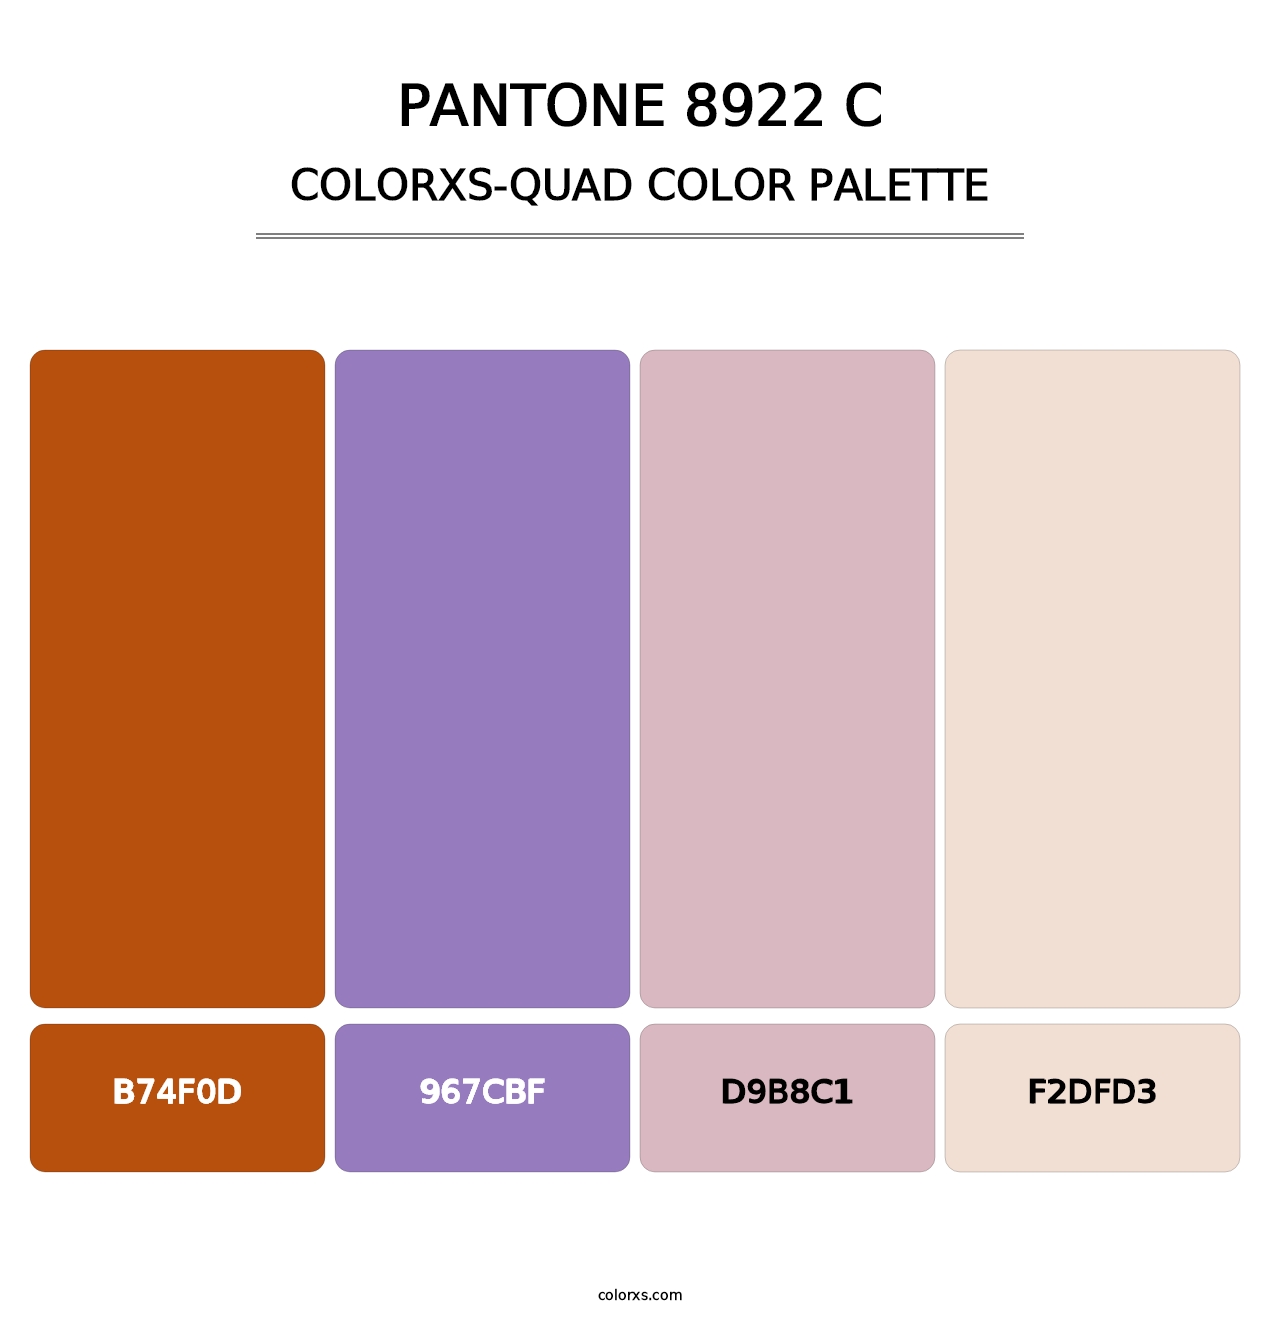 PANTONE 8922 C - Colorxs Quad Palette